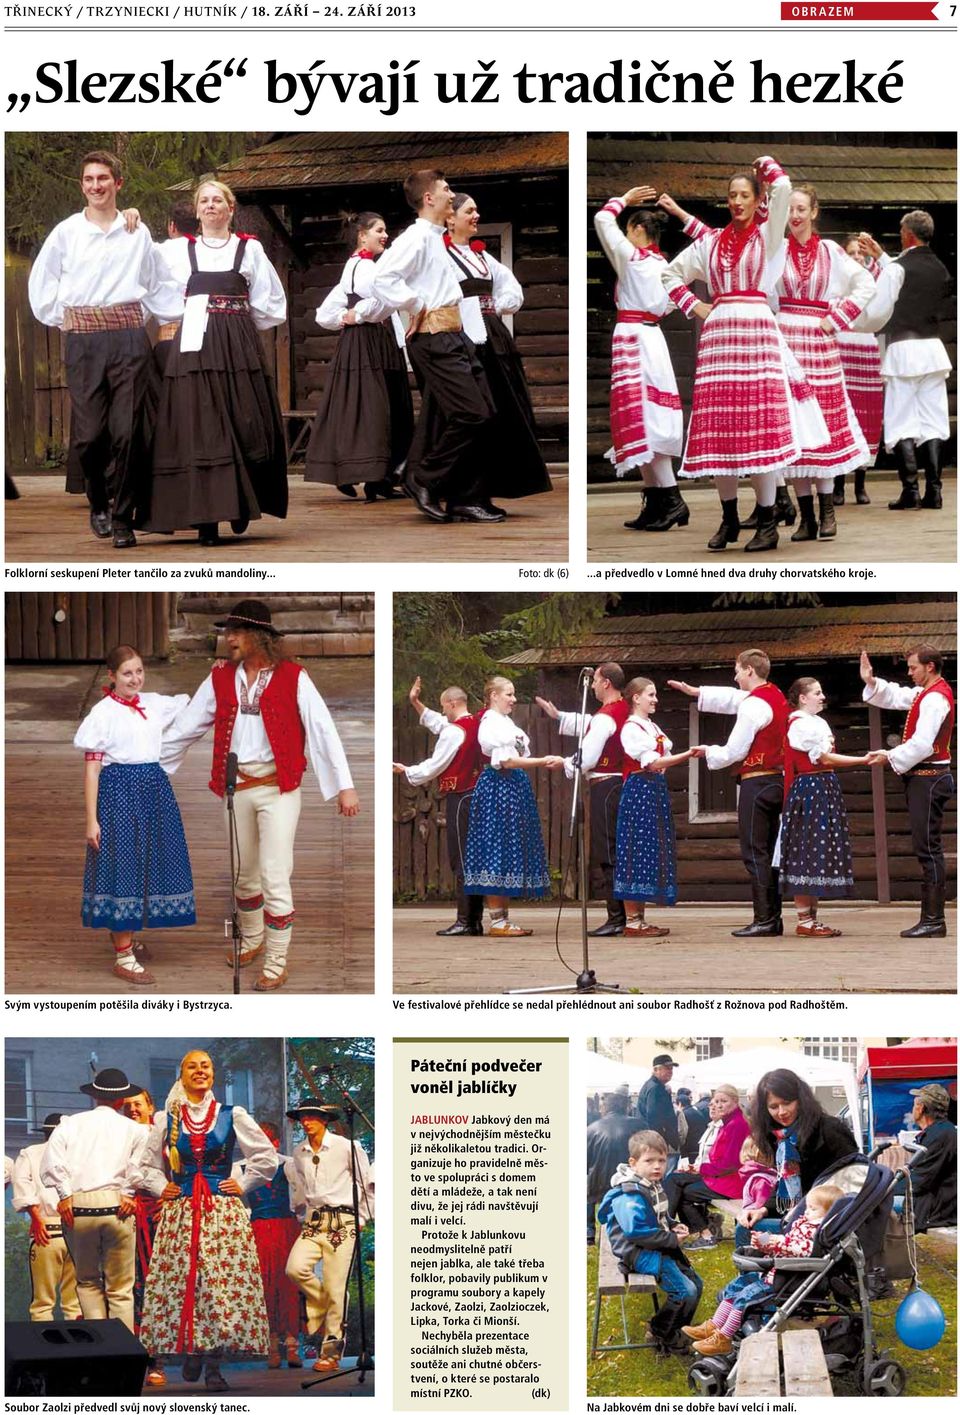 Soubor Zaolzi předvedl svůj nový slovenský tanec. Páteční podvečer voněl jablíčky Jablunkov Jabkový den má v nejvýchodnějším městečku již několikaletou tradici.